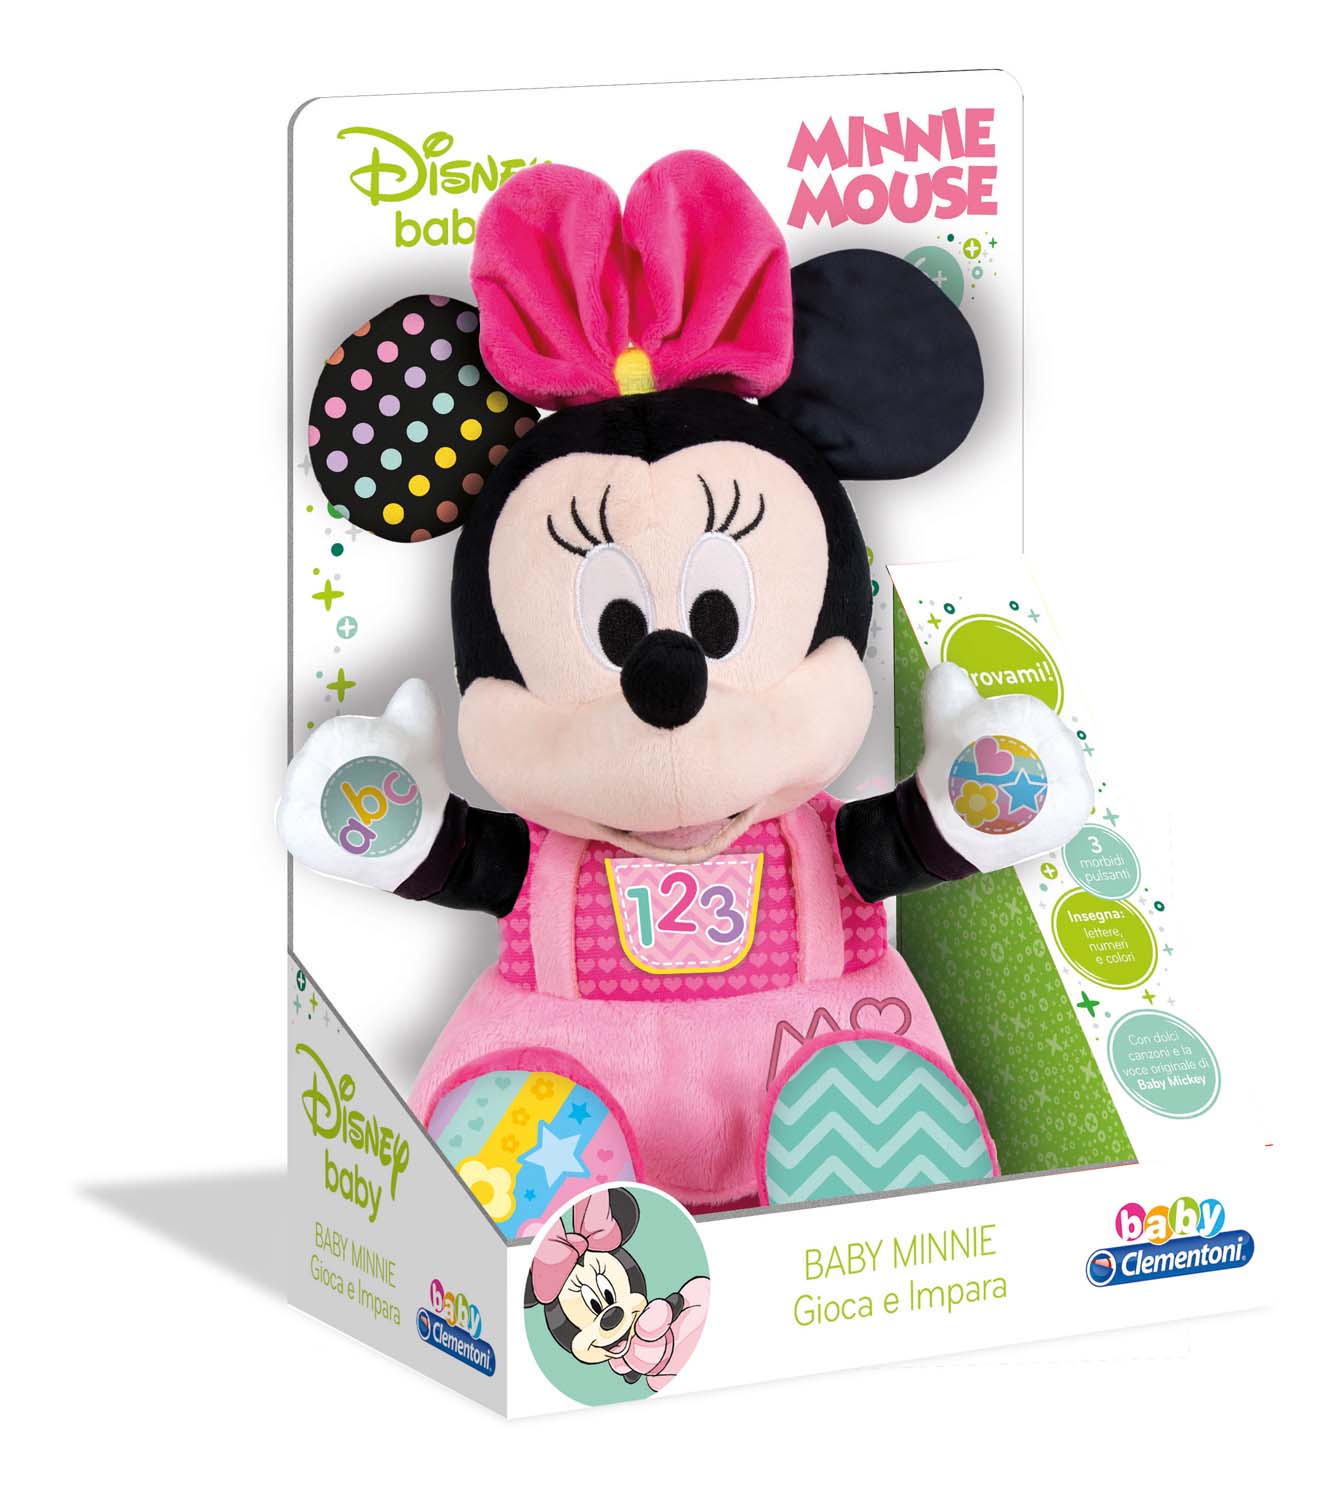 Merchandising : Disney Baby - Baby Minnie Gioca E Impara Peluche NUOVO SIGILLATO EDIZIONE DEL SUBITO DISPONIBILE